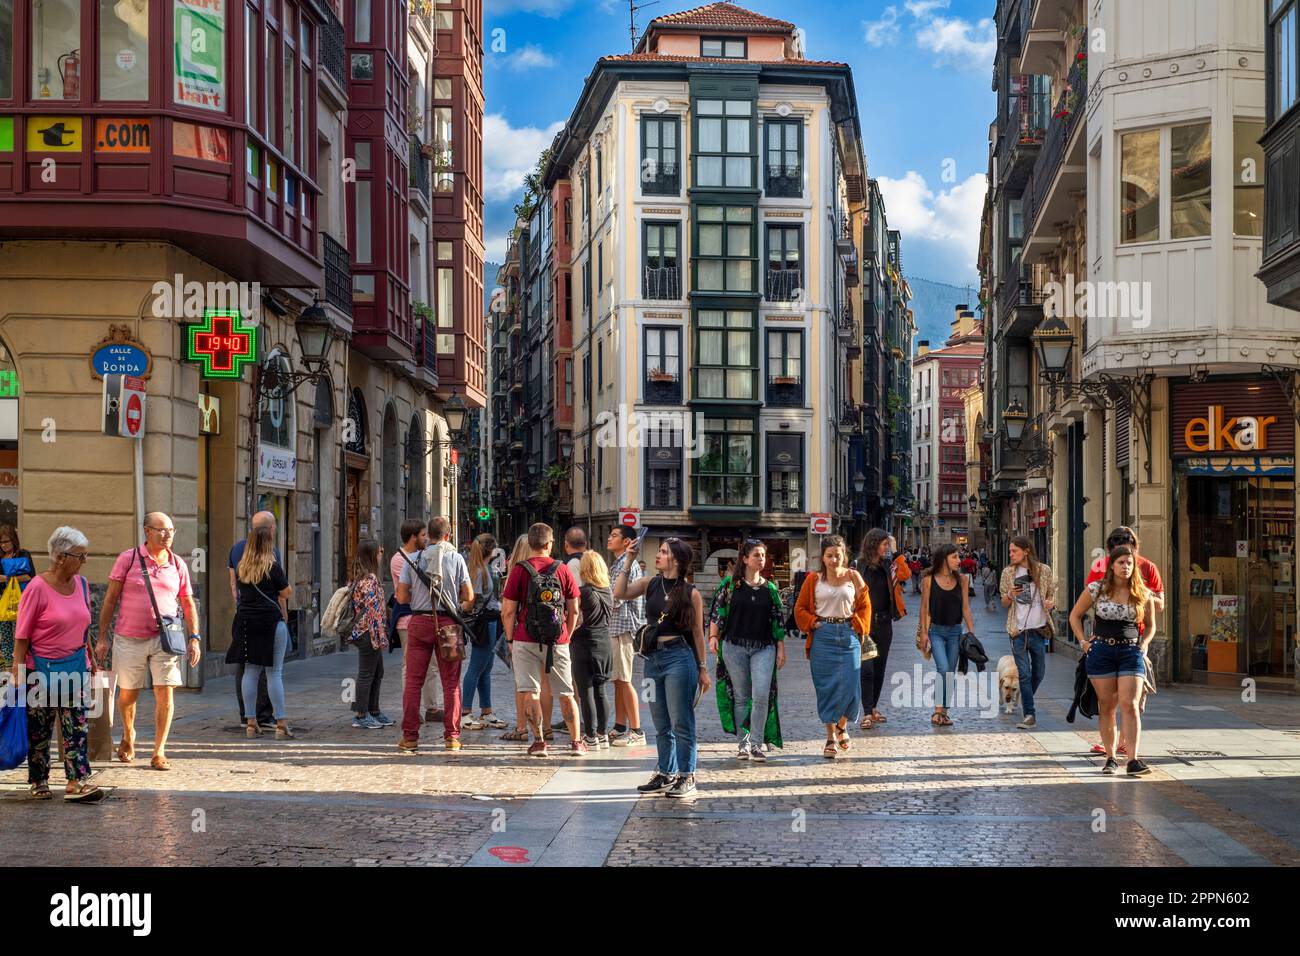 Bilbao Altstadt, Blick auf Gebäude und Menschen in der Calle de la cruz Straße im Zentrum der Altstadt (Casco Viejo) von Bilbao, Spanien Stockfoto